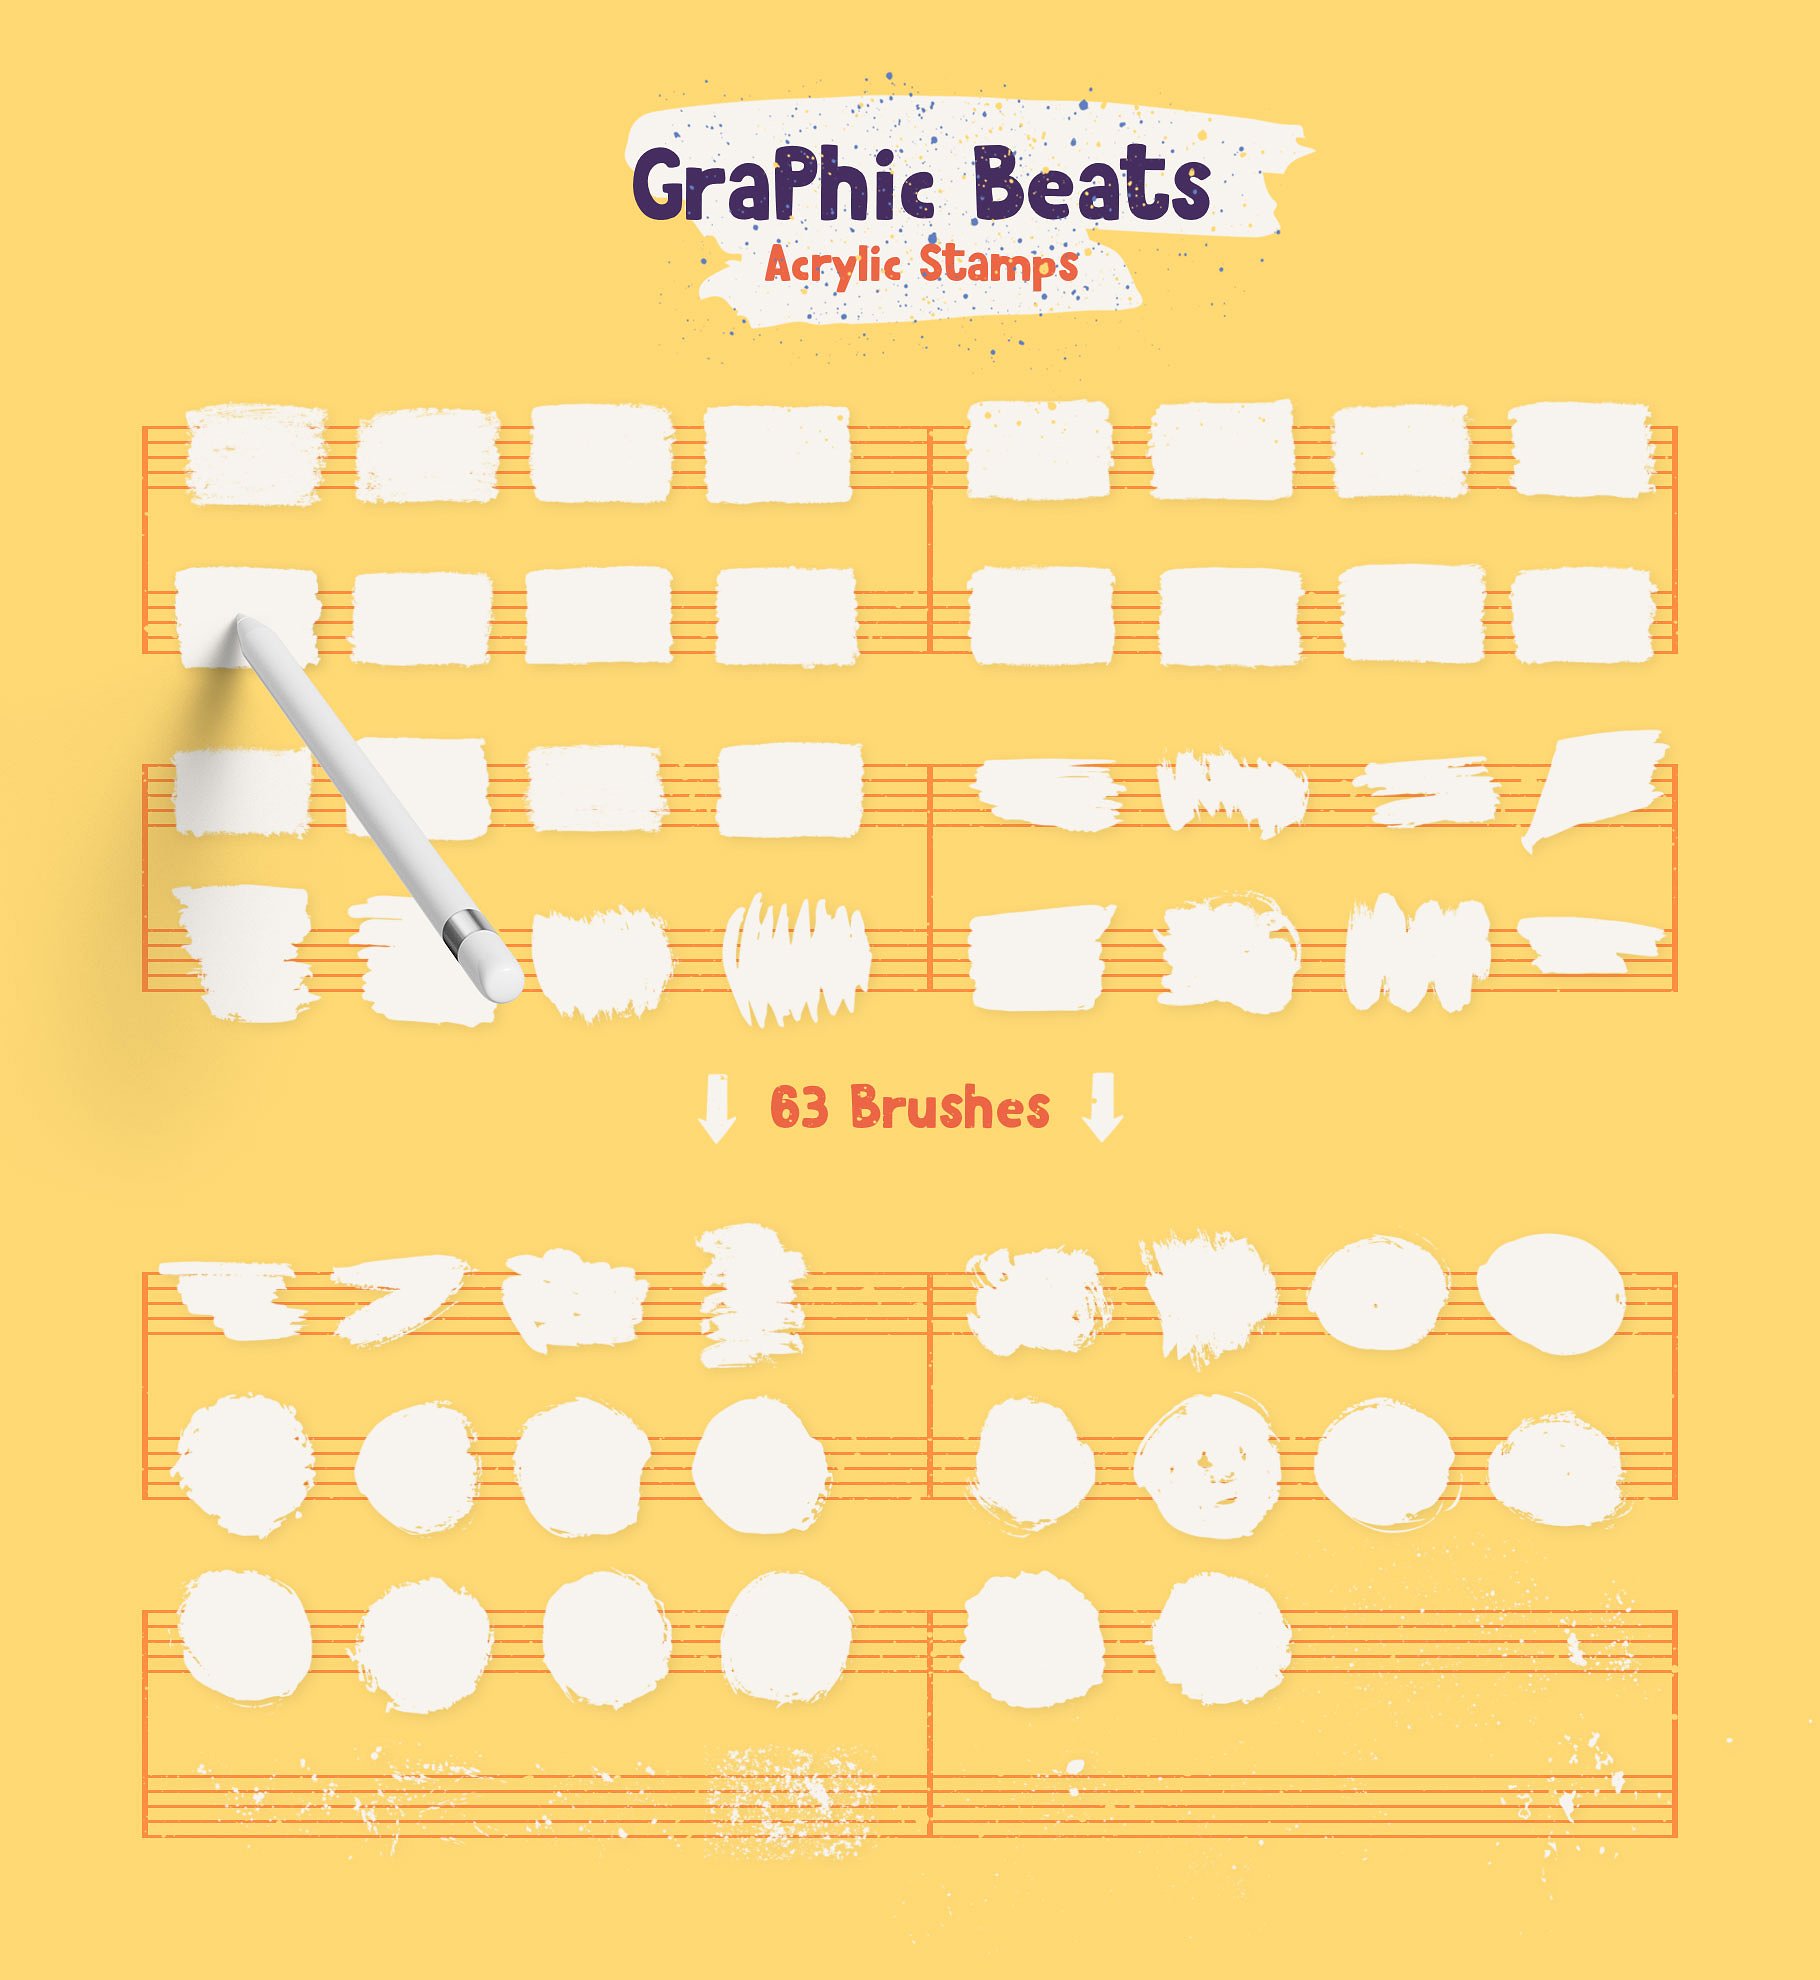 手绘卡通粗糙符合线条图形ProCreate图章笔刷 Graphic Beats Brushes for ProCreate插图6